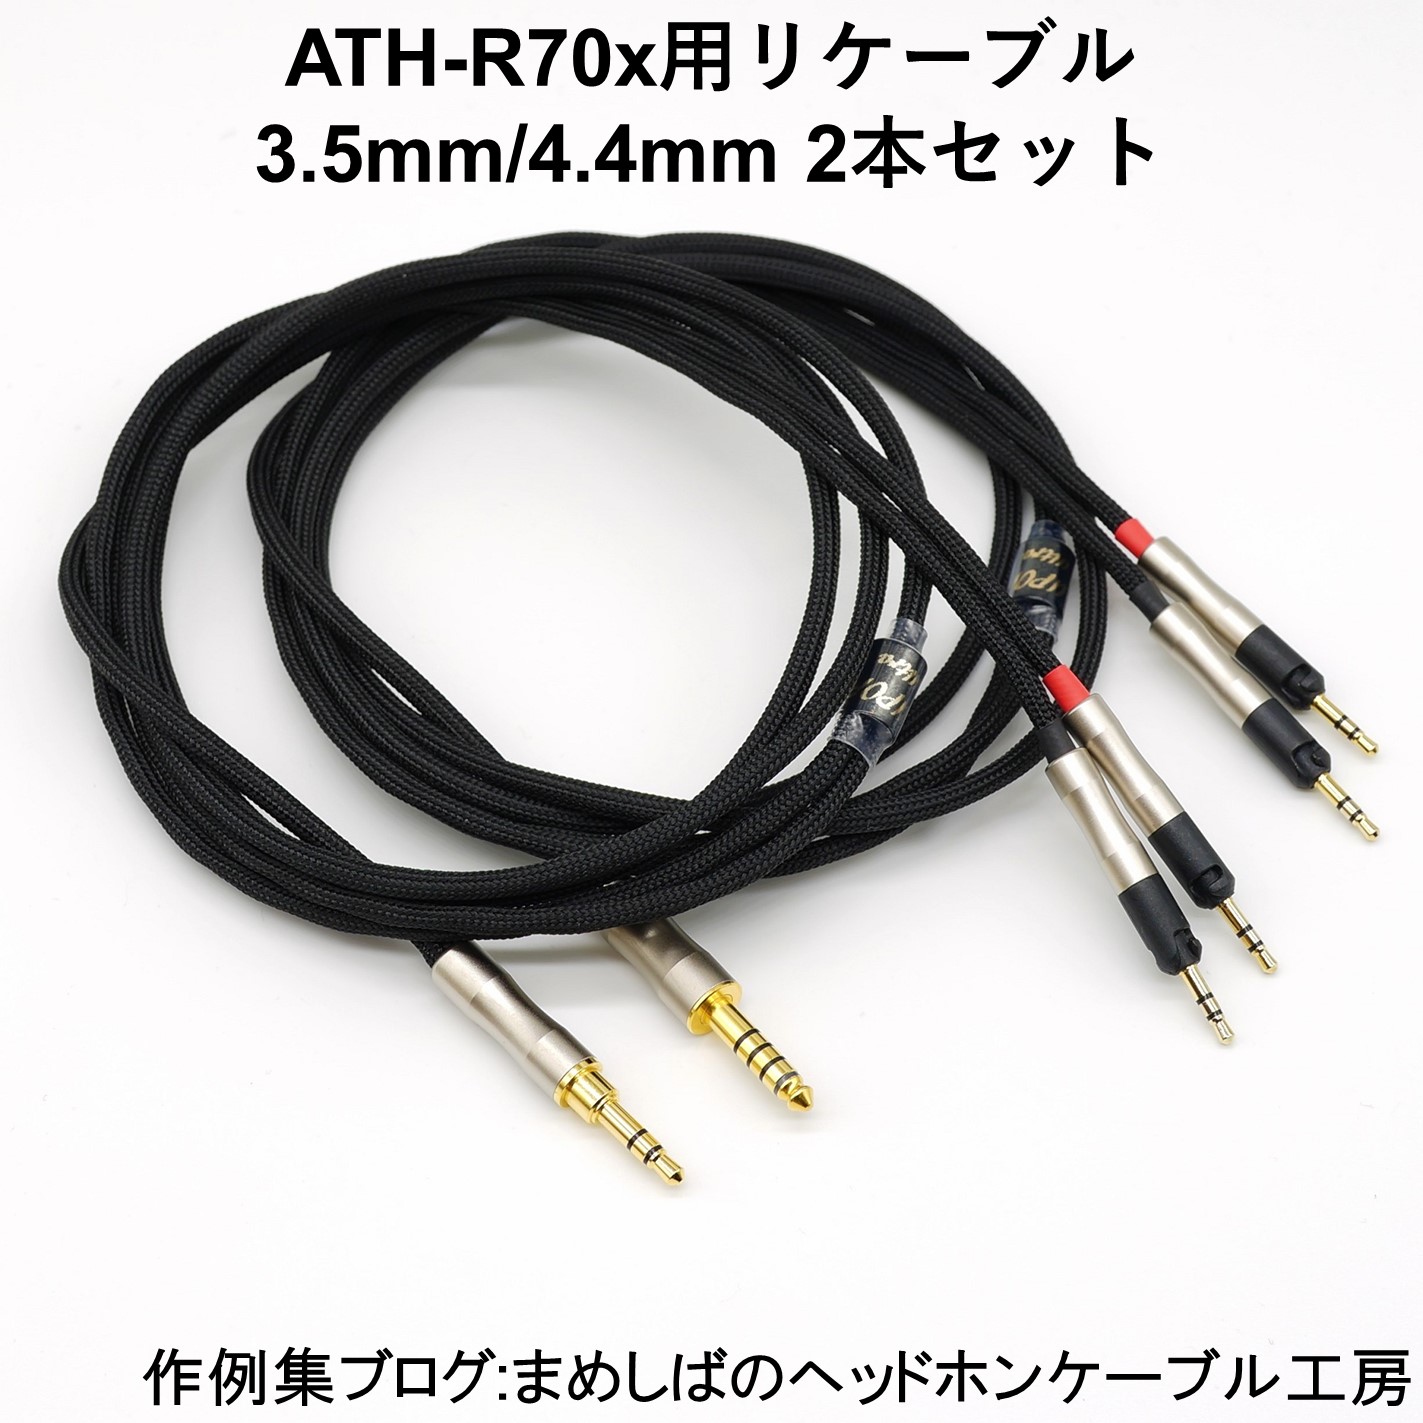 ATH-R70x バランス リケーブル 4.4mm 3.5mm 2本セット : まめしばの ...